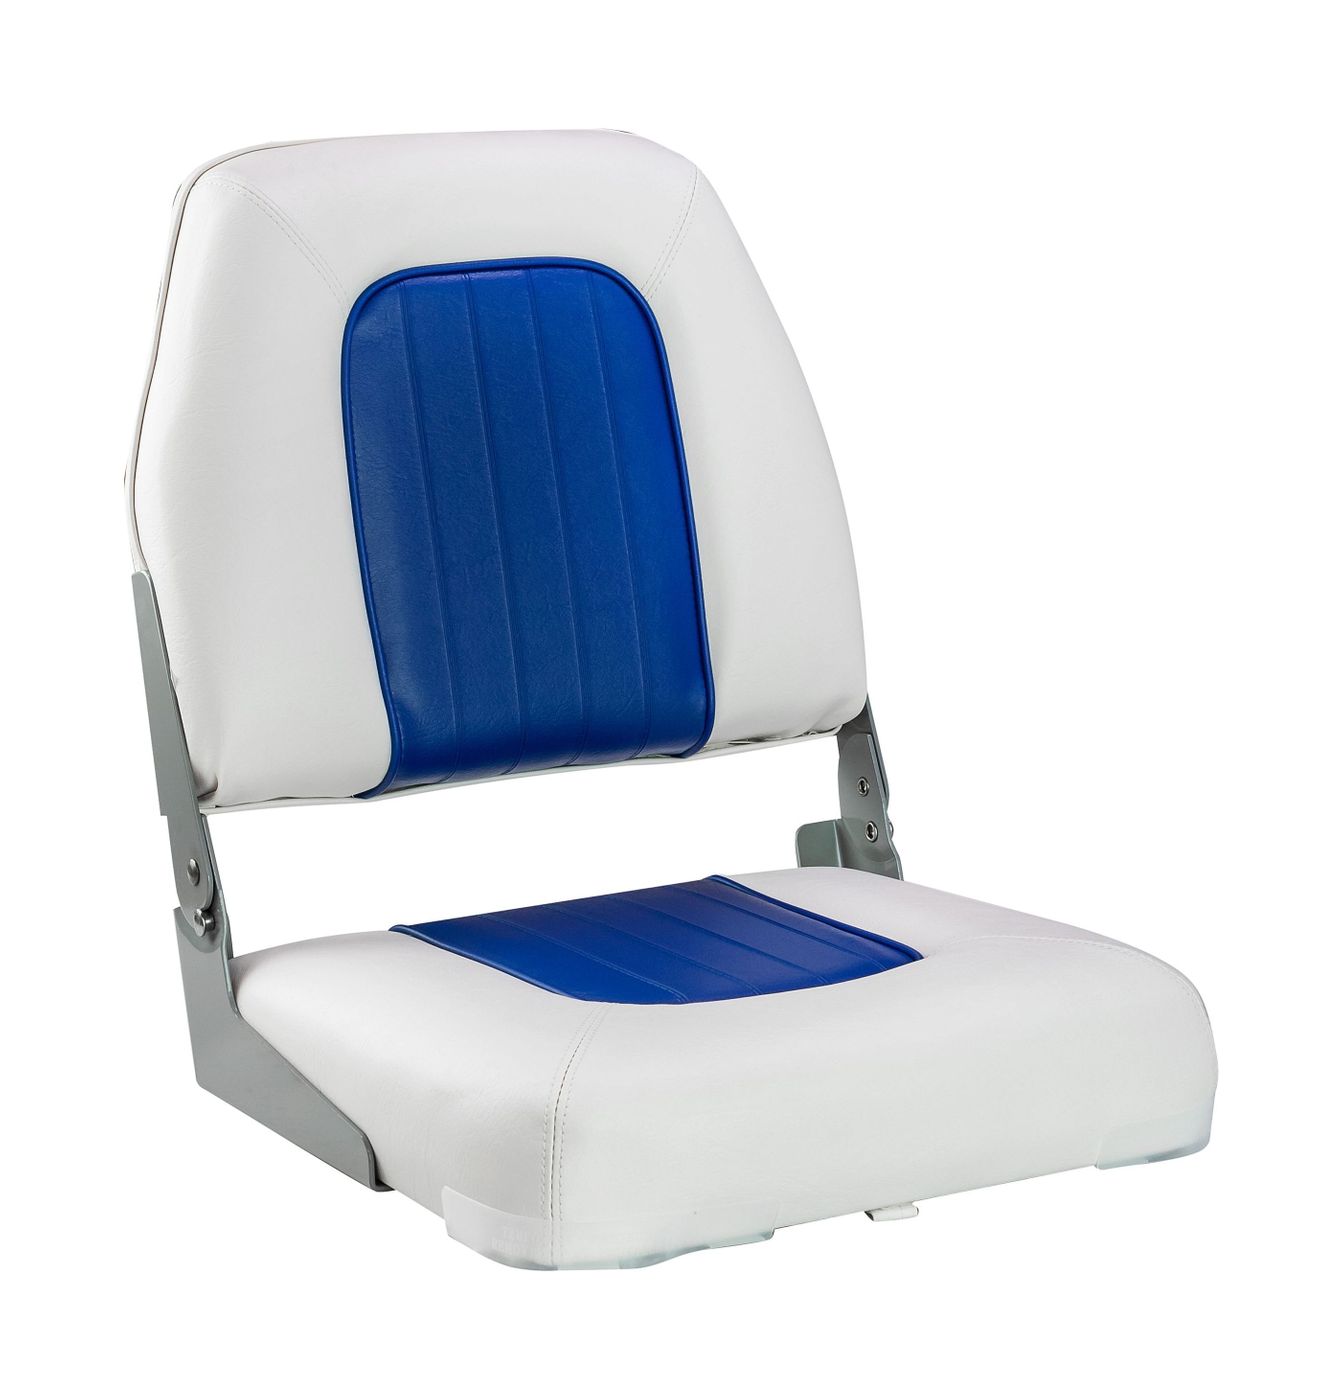 Кресло мягкое складное Deluxe, обивка винил, цвет белый/синий, Marine Rocket 75137WB-MR